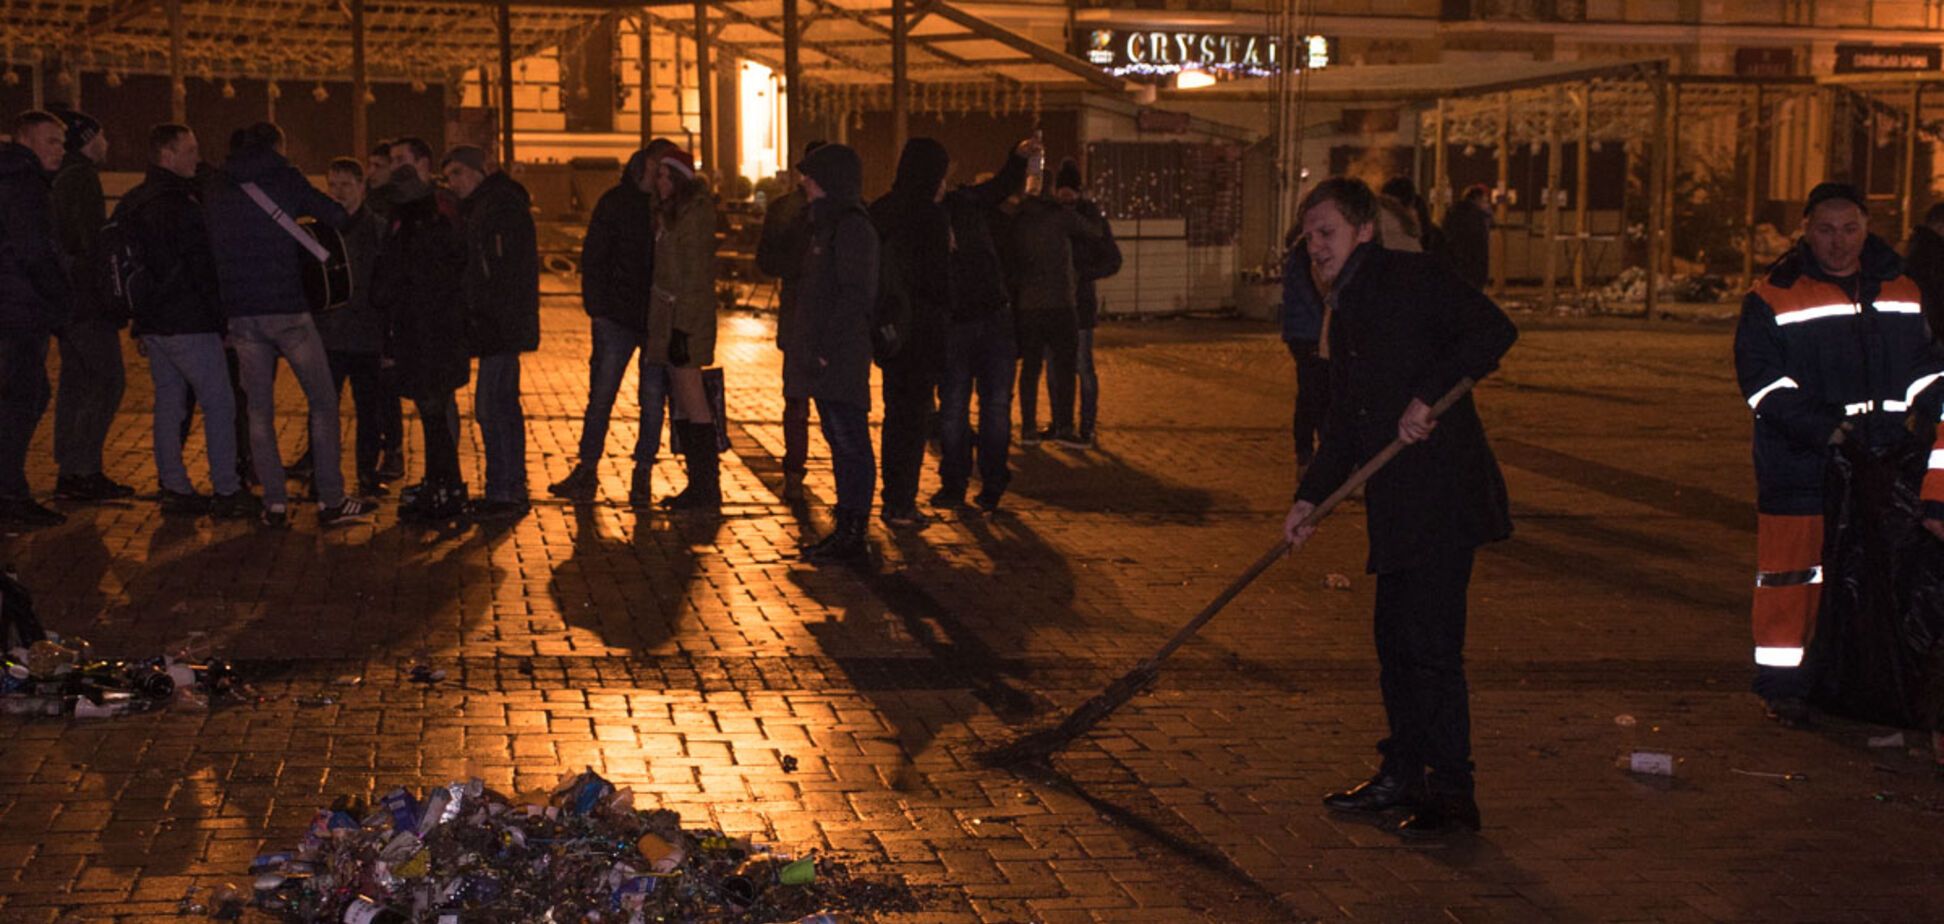 'Погуляли, бл*дь': новорічне звалище в центрі Києва обурило мережу